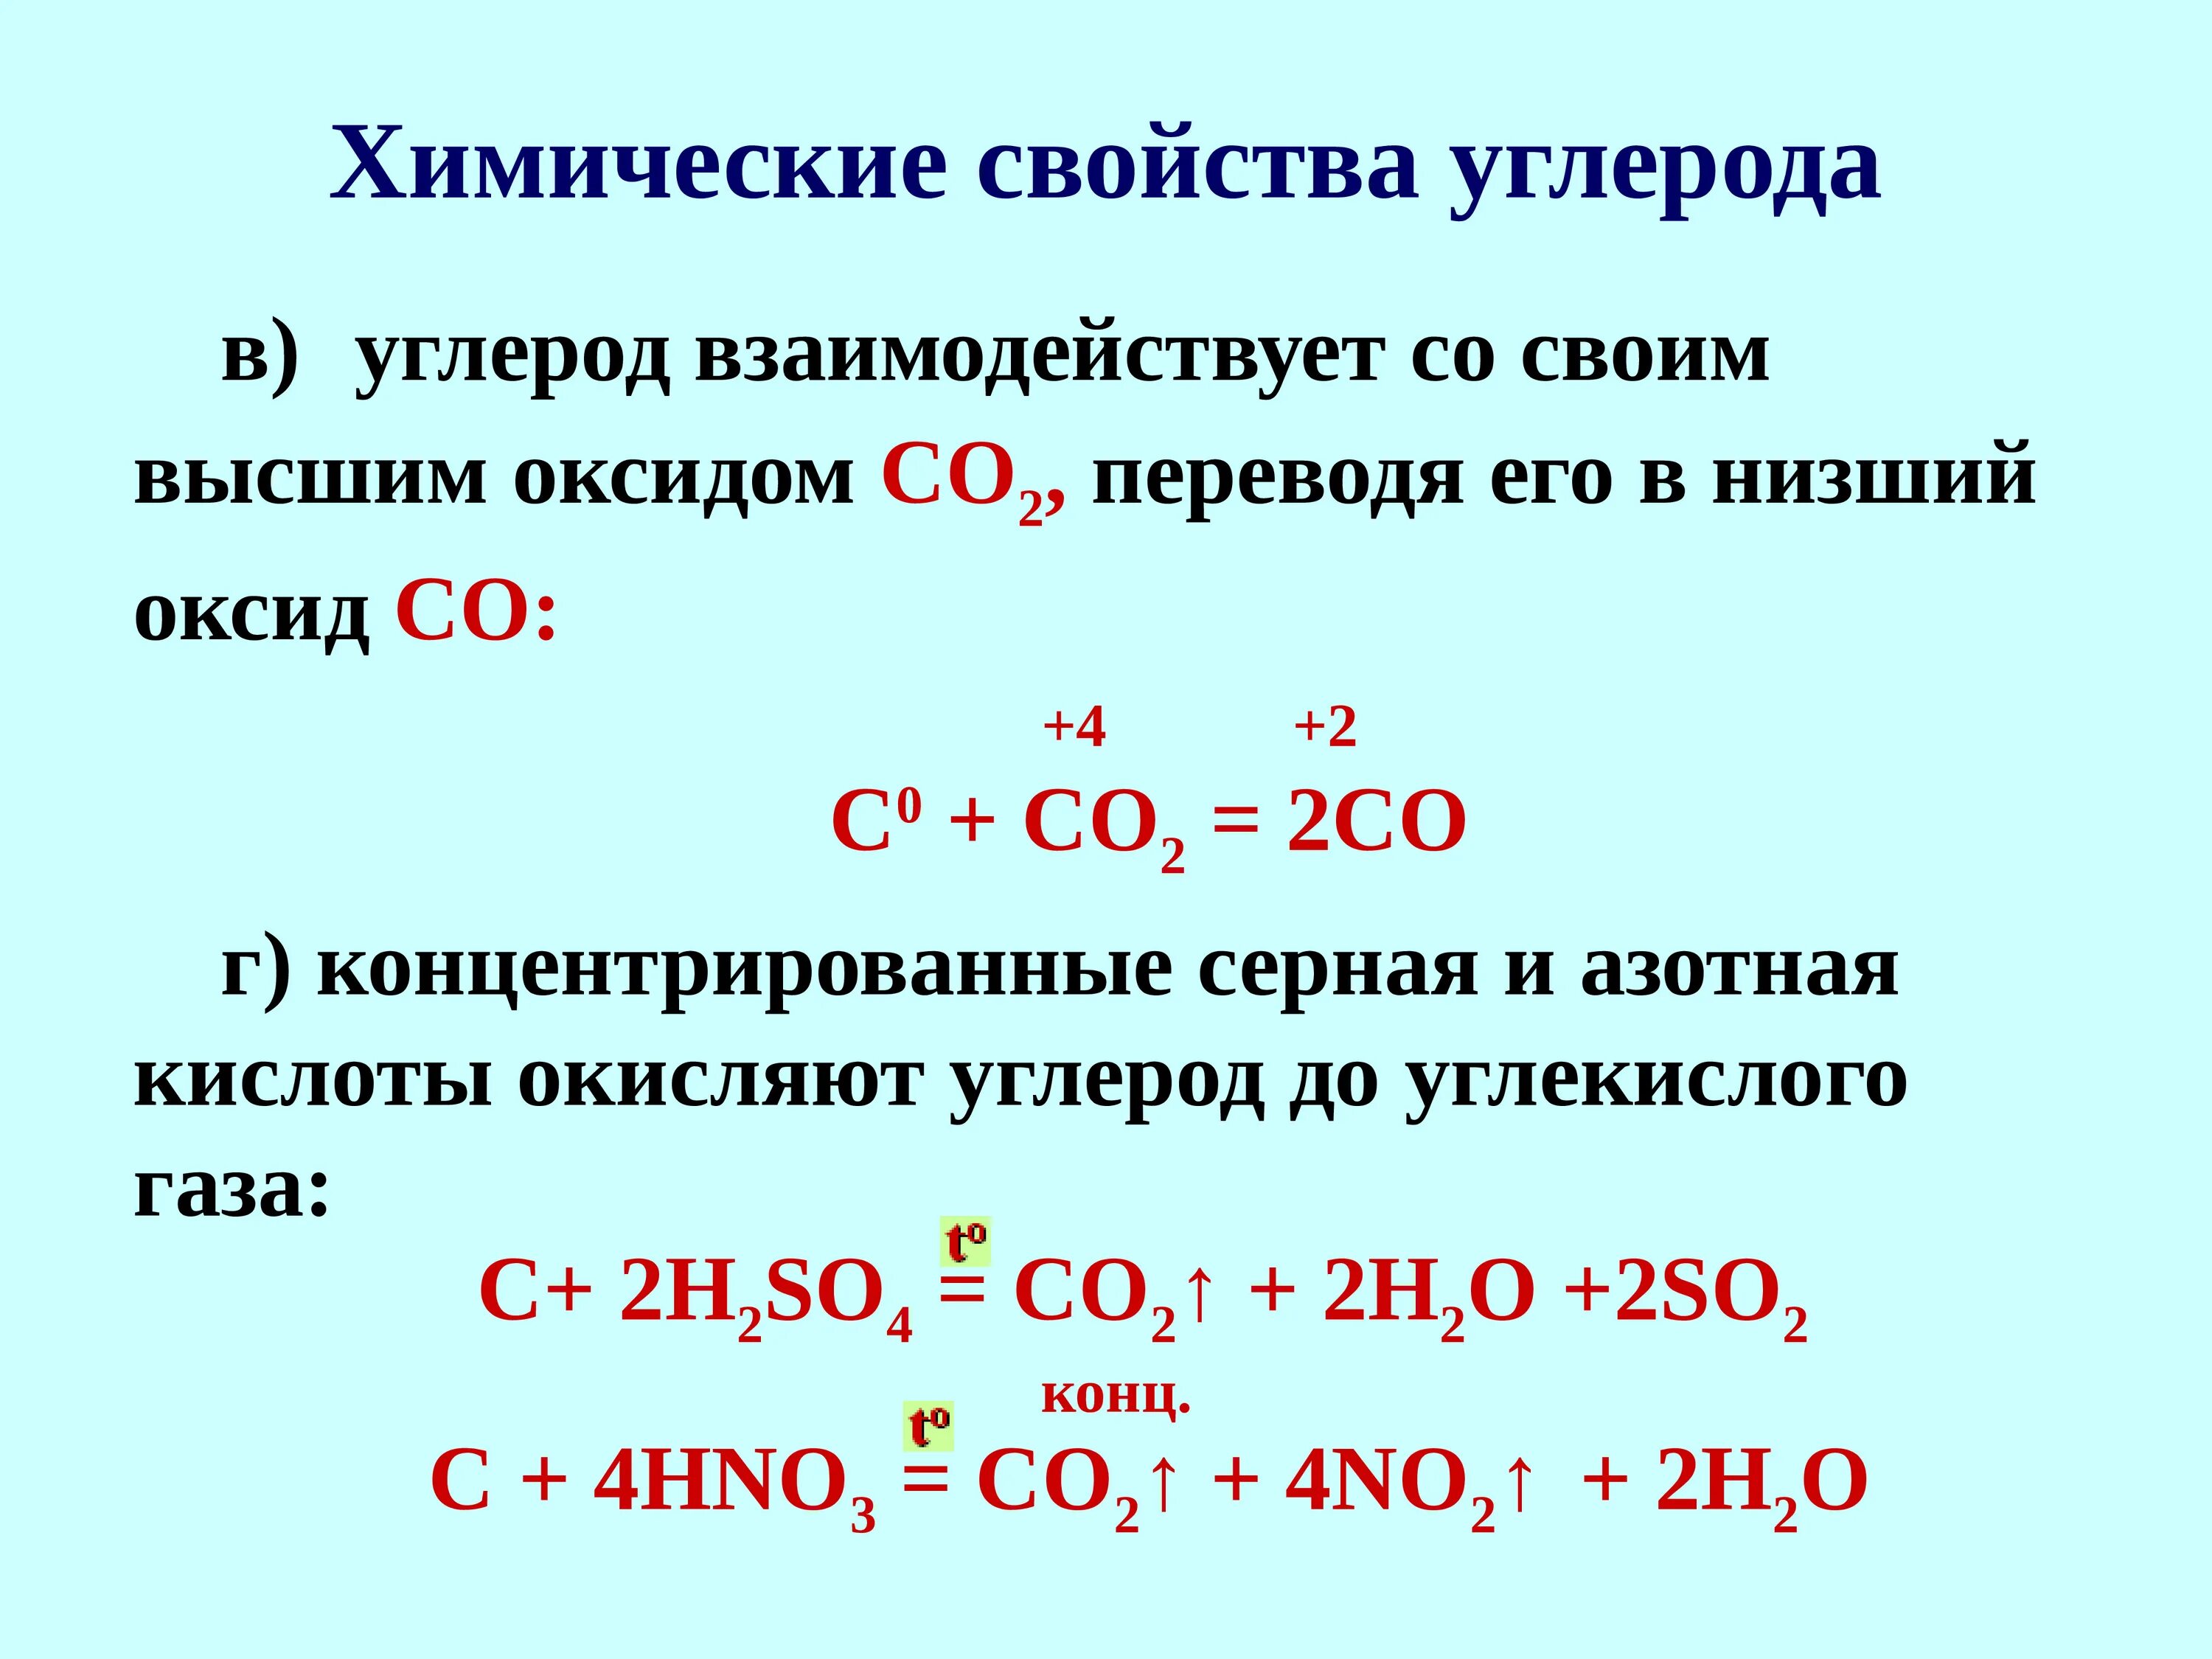 Азотная кислота и оксид углерода 4 реакция. Углерод плюс азотная концентрированная. Углерод плюс концентрированная серной кислота. Взаимодействие углерода с концентрированной серной кислотой. Углерод взаимодействует с кислотами.